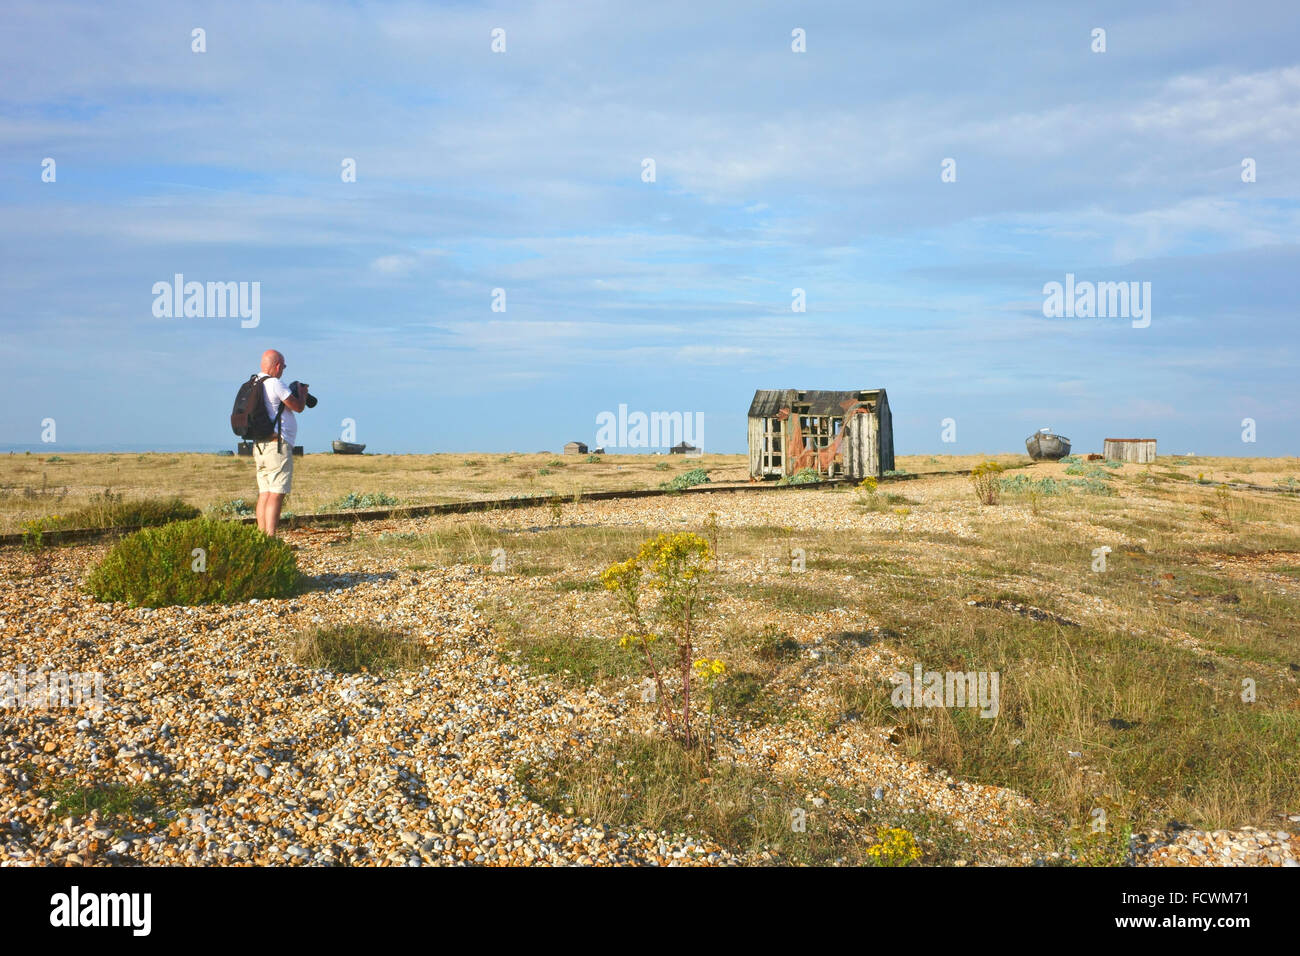 El desolador y desolador paisaje de la cabecera Dungeness es un lugar popular para los fotógrafos de Kent, Reino Unido Foto de stock